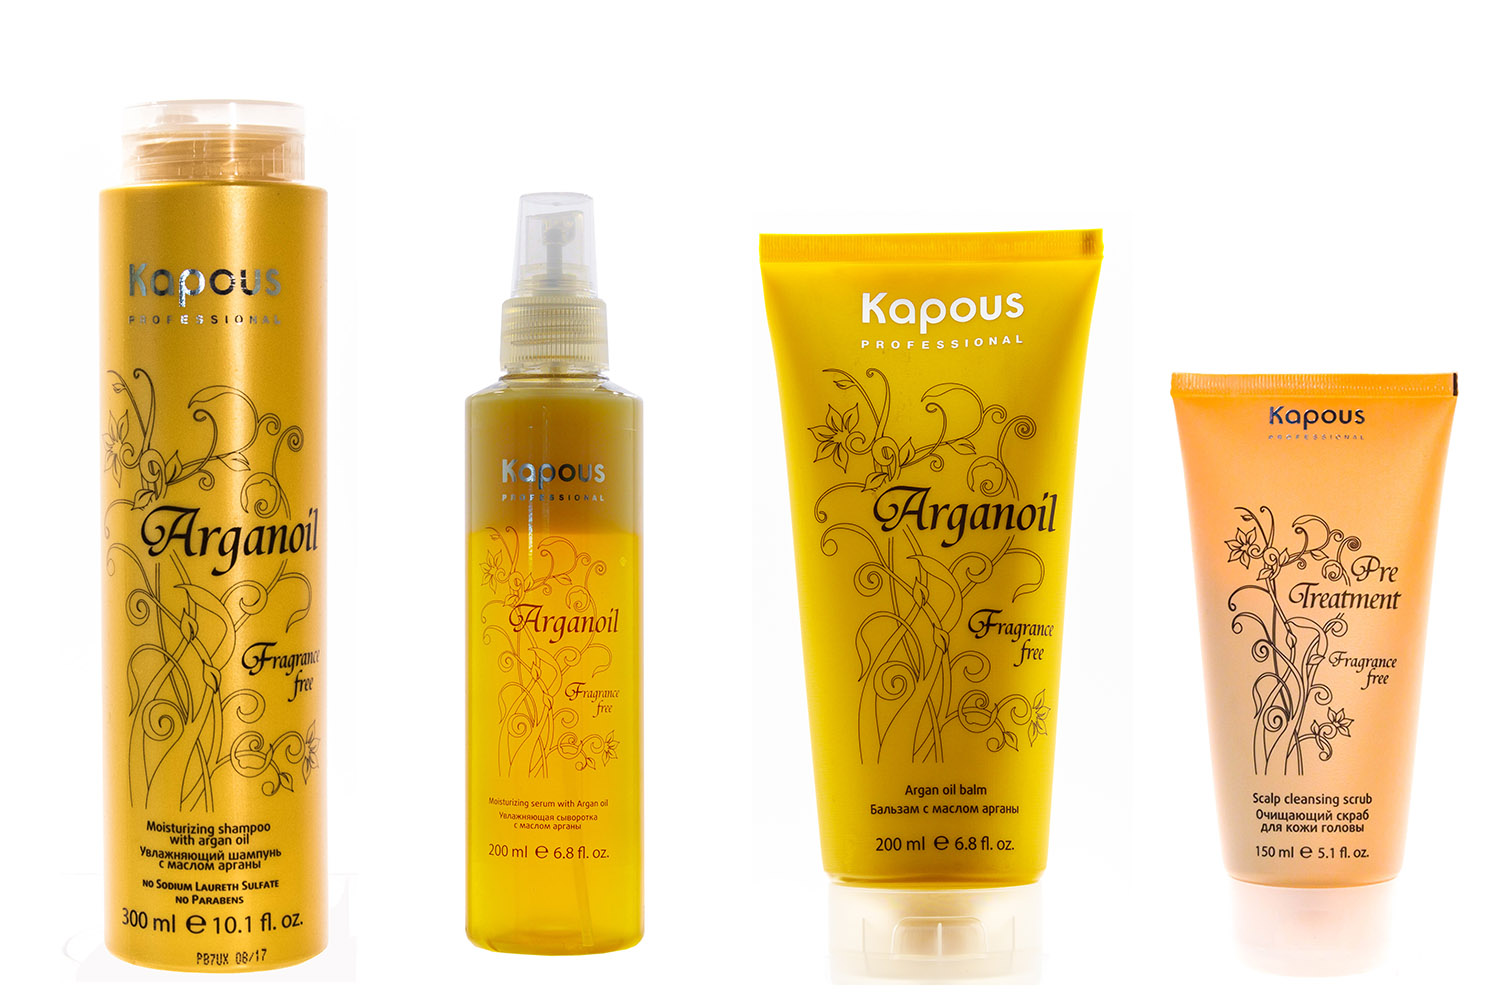 Купить Kapous Professional Набор для волос с маслом арганы: скраб 150 мл + шампунь 300 мл + бальзам 200 мл + сыворотка 200 мл, 1 шт (Kapous Professional, Arganoil), Италия